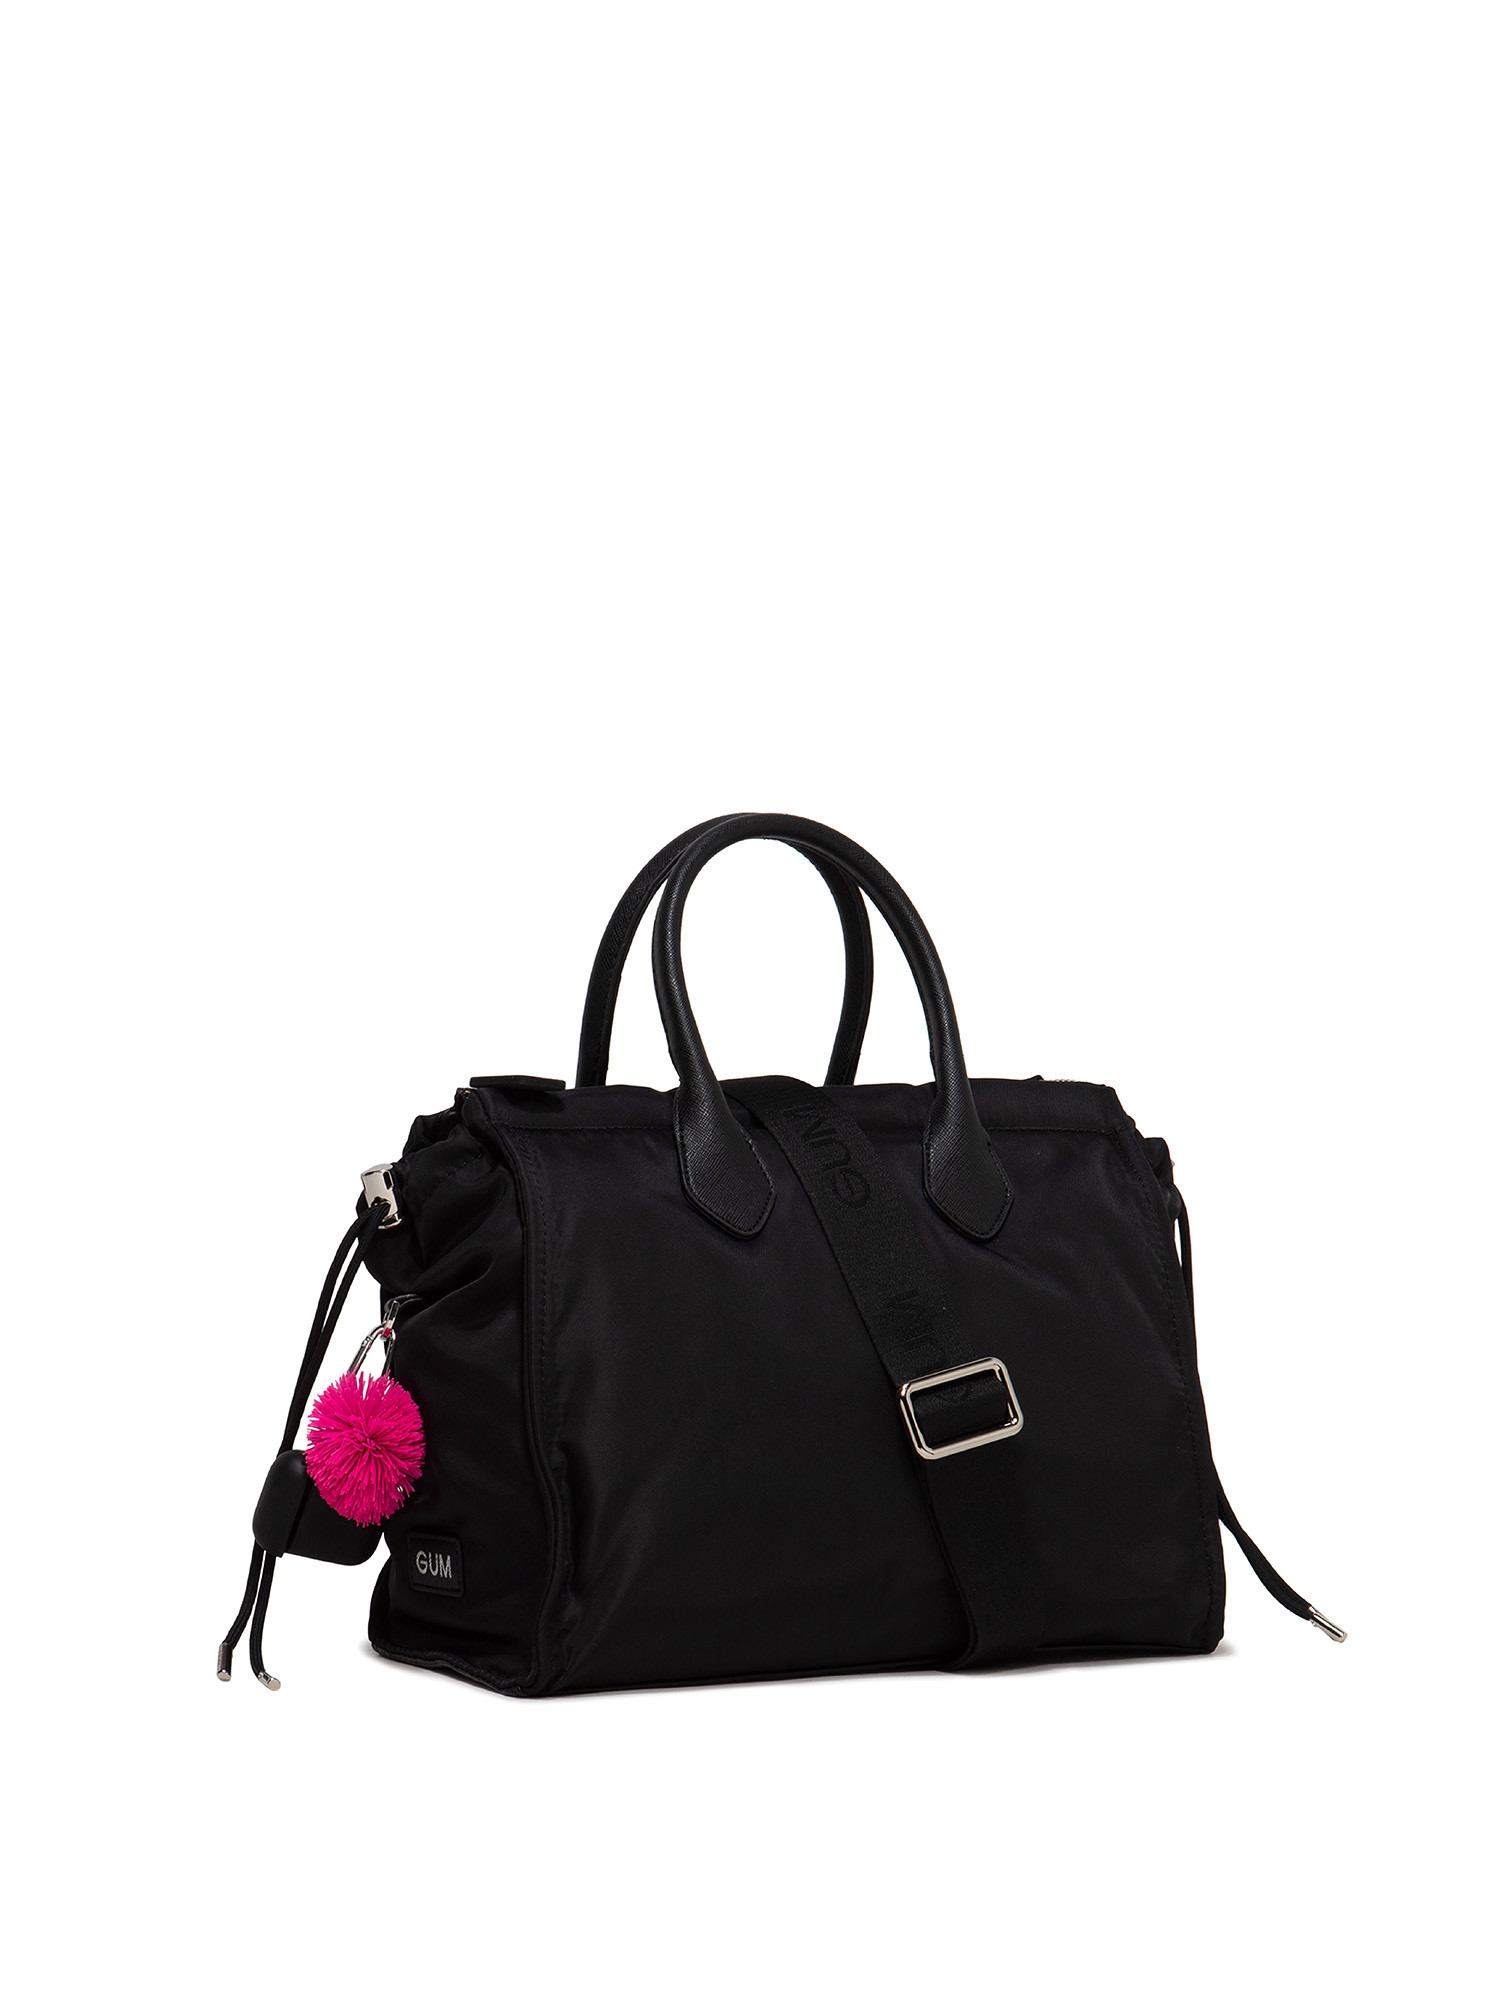 Large handbag Escape, Black, large image number 2